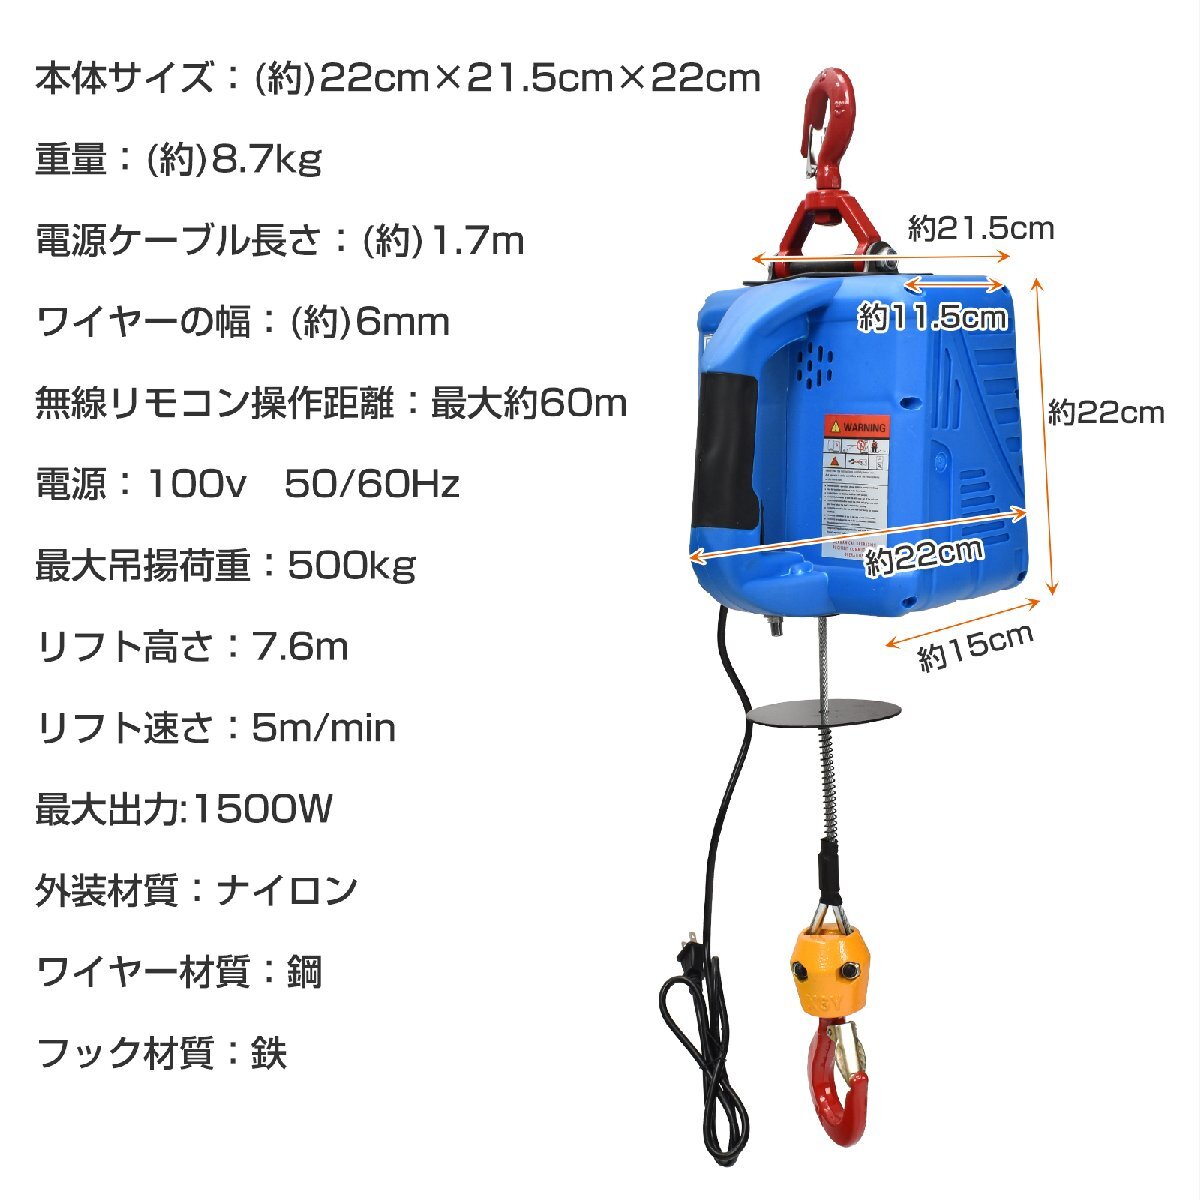 1 иен электролебедка электрический подъемный механизм кран подъёмный машина лифтинг подвешивание ниже 500kg 1500W руль проводной беспроводной дистанционный пульт для бытового использования инструмент транспортировка sg149